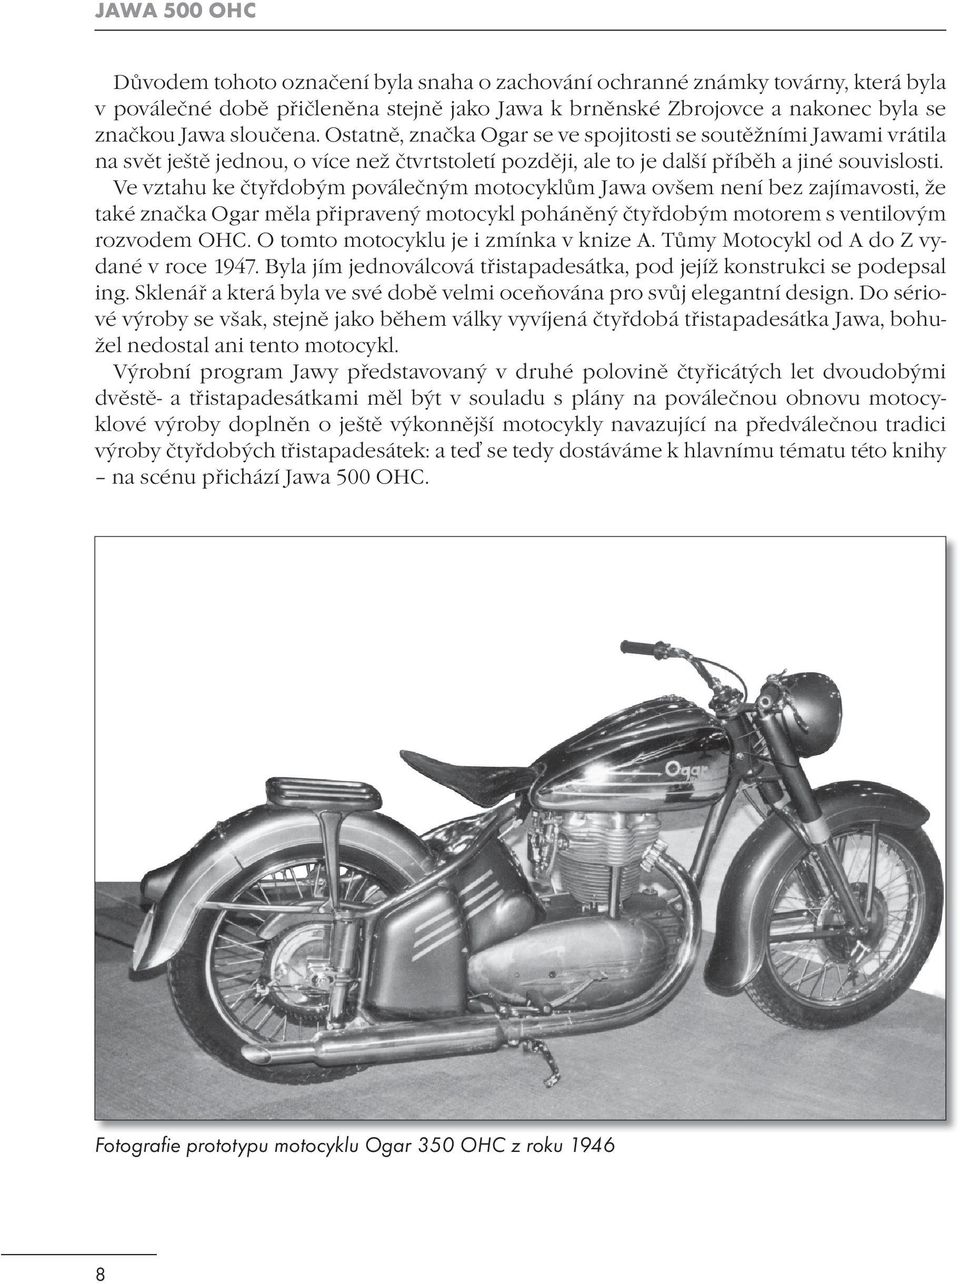 Ve vztahu ke čtyřdobým poválečným motocyklům Jawa ovšem není bez zajímavosti, že také značka Ogar měla připravený motocykl poháněný čtyřdobým motorem s ventilovým rozvodem OHC.